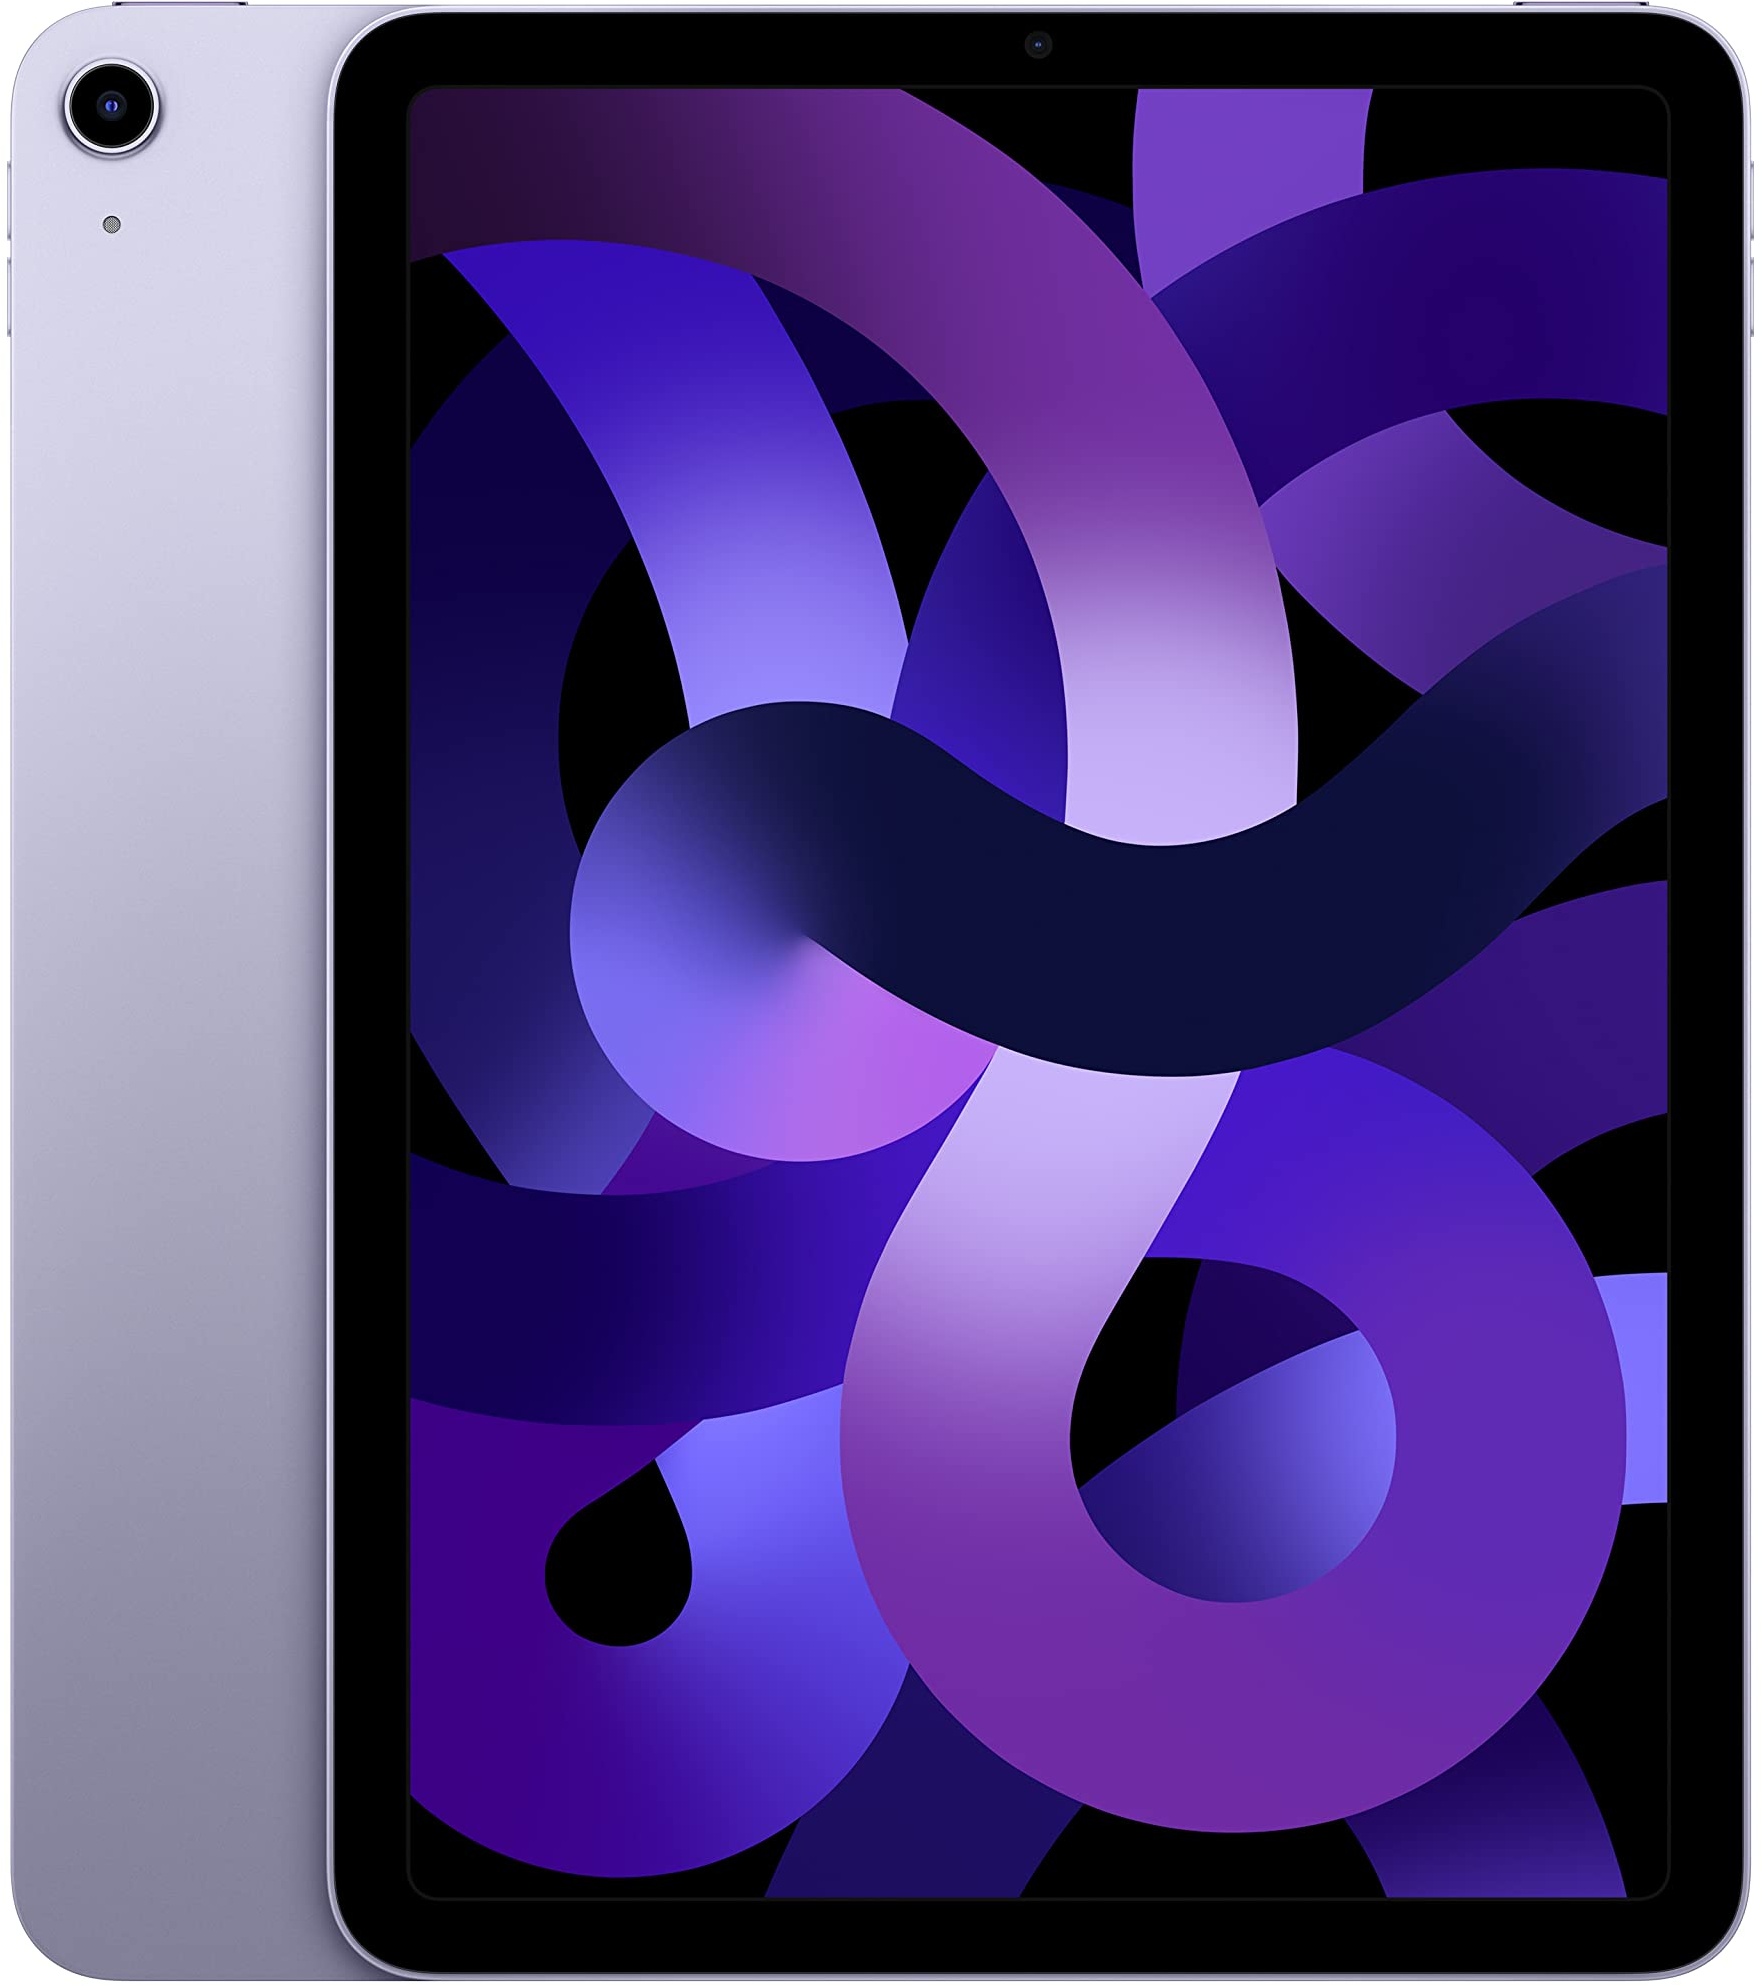 Apple 2022 iPad Air (Wi-Fi, 64 GB) - Violett (5. Generation)